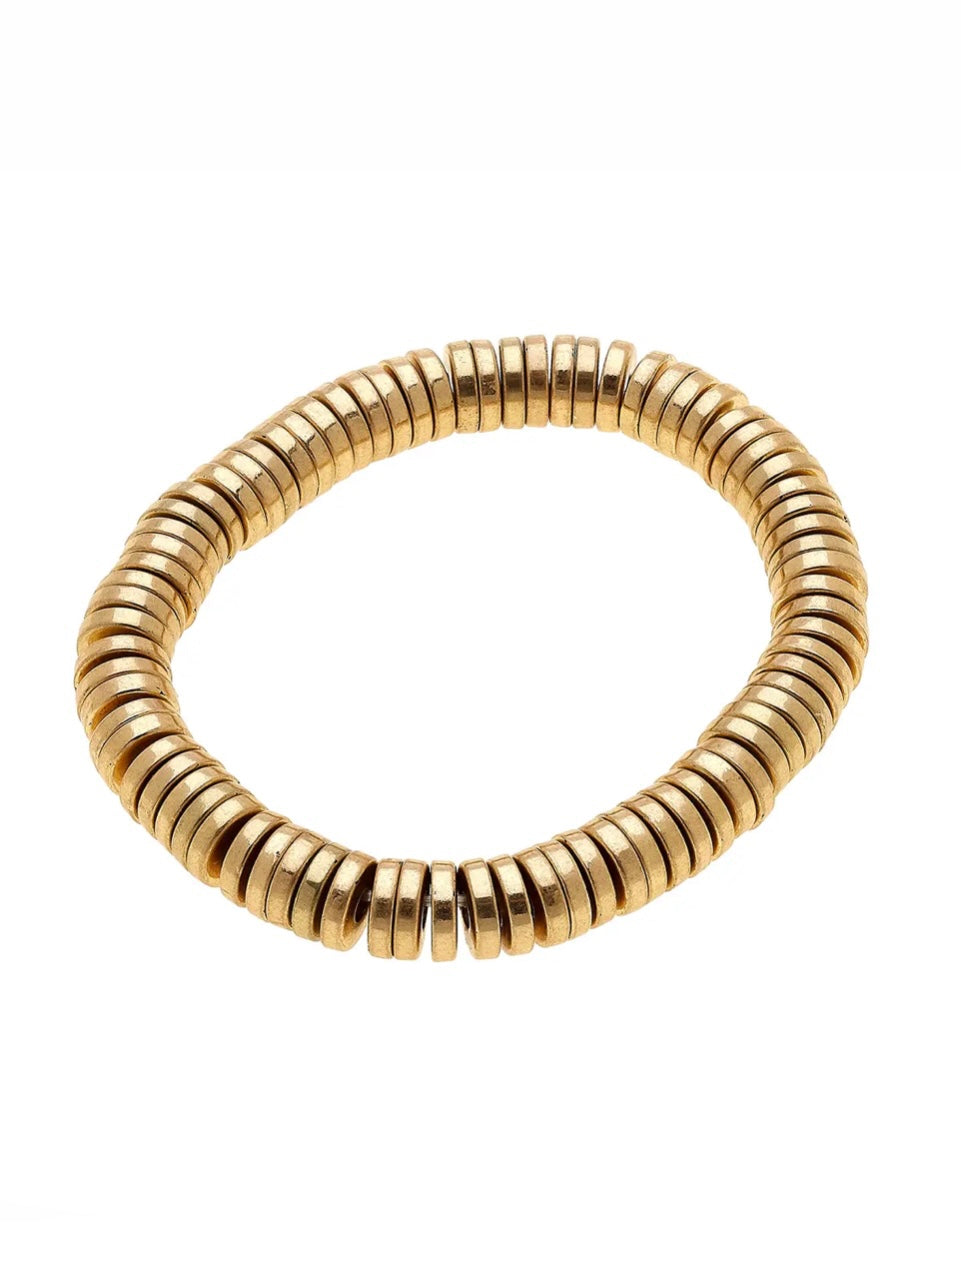 Emberly Bracelet in Worn Gold